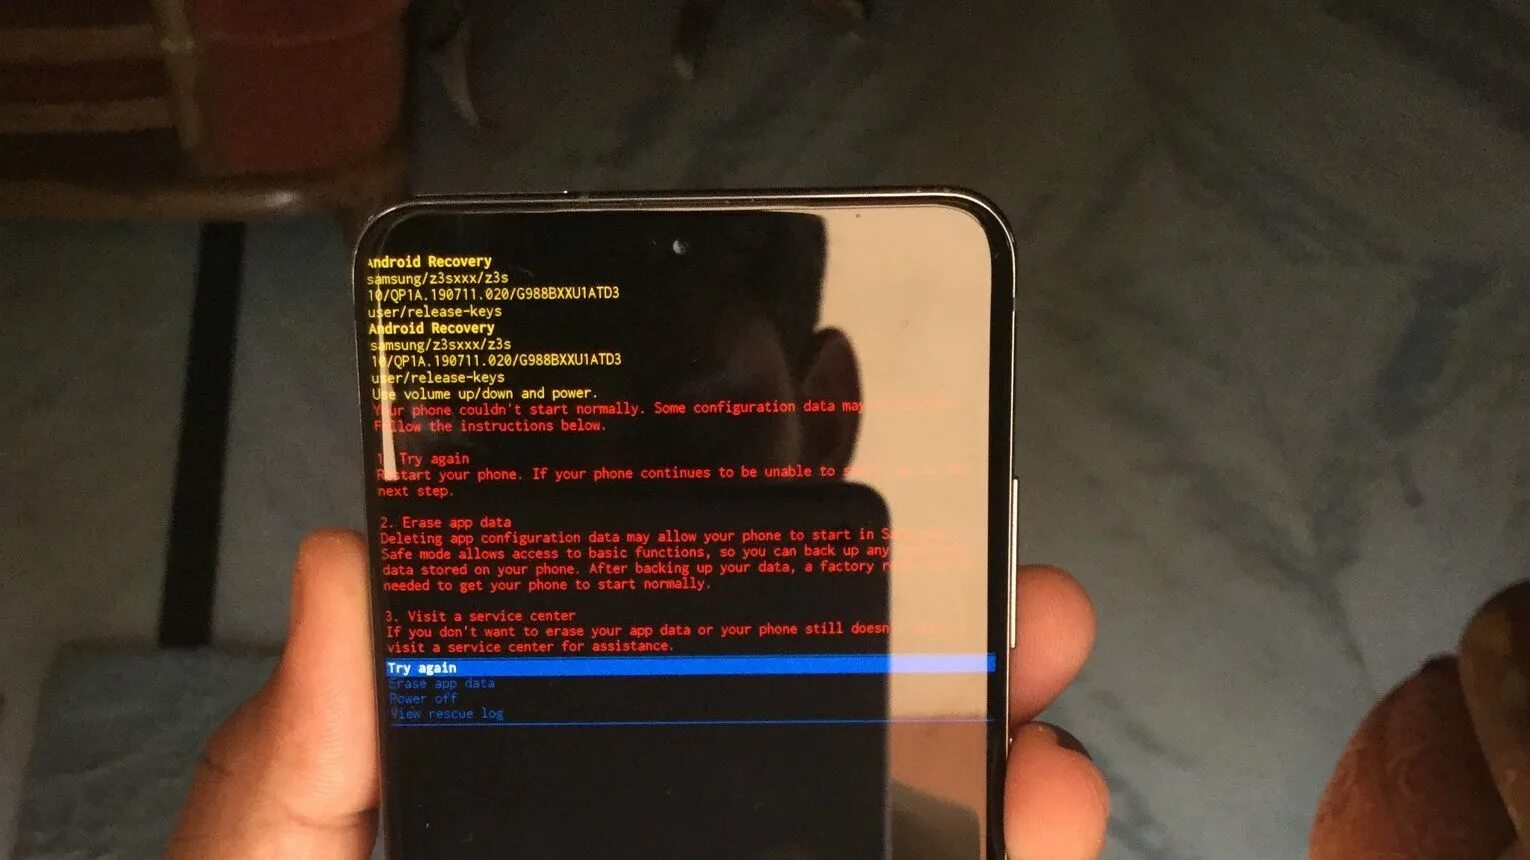 Erase app data. Приложение рекавери на Android Samsung s2. Экран телефона рекавери. Erase app data на самсунге. На экране запуск телефона что делать